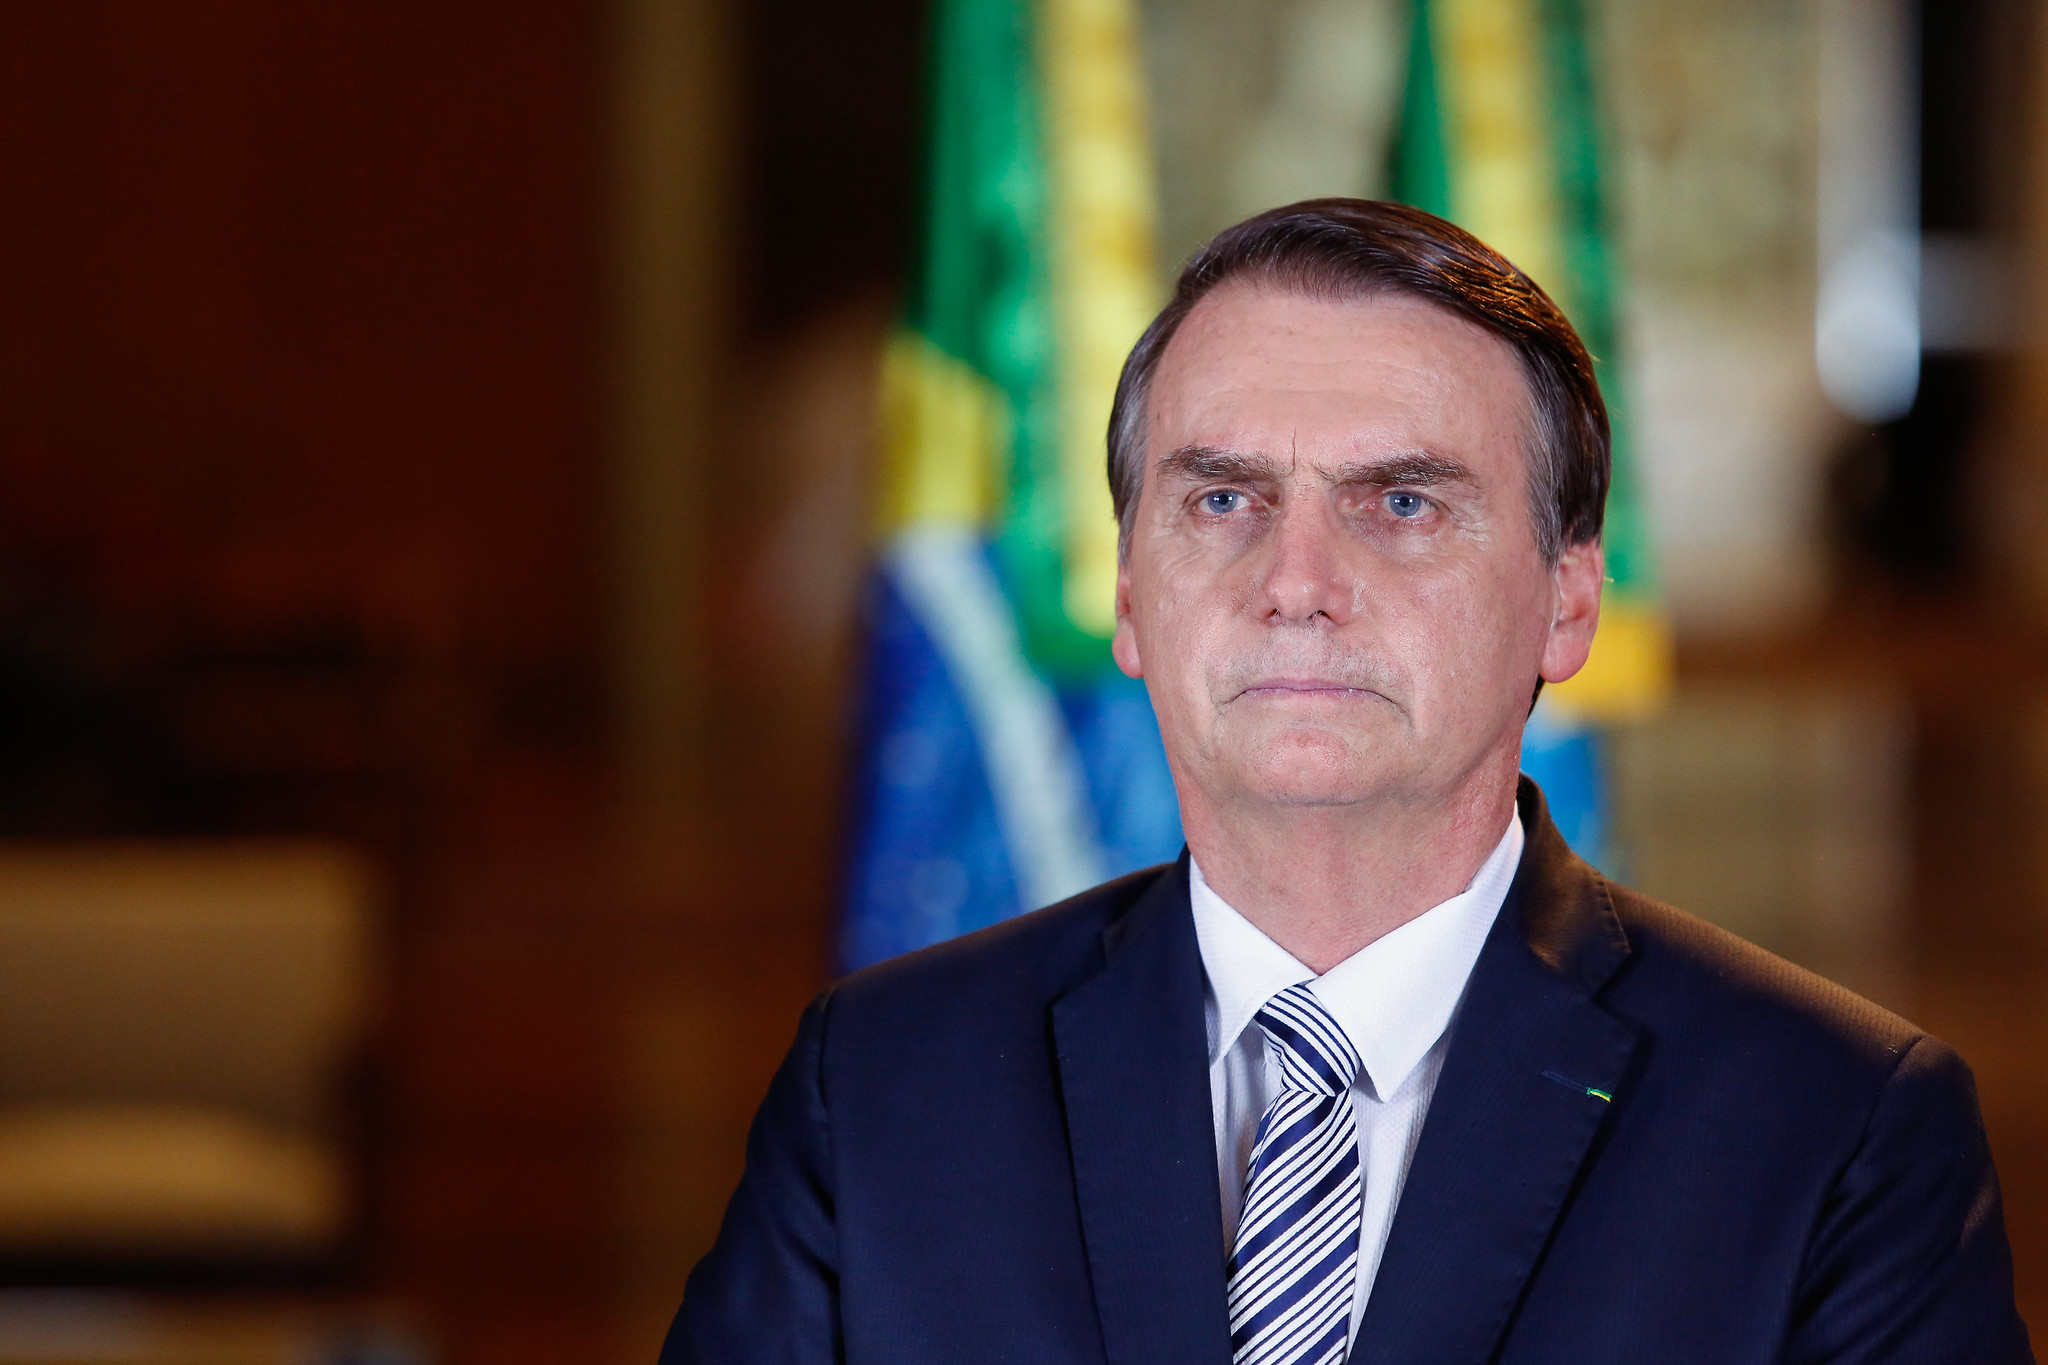 Imagem referente a ‘Escola Sem Partido’ já está em operação, mesmo sem lei específica, diz Bolsonaro